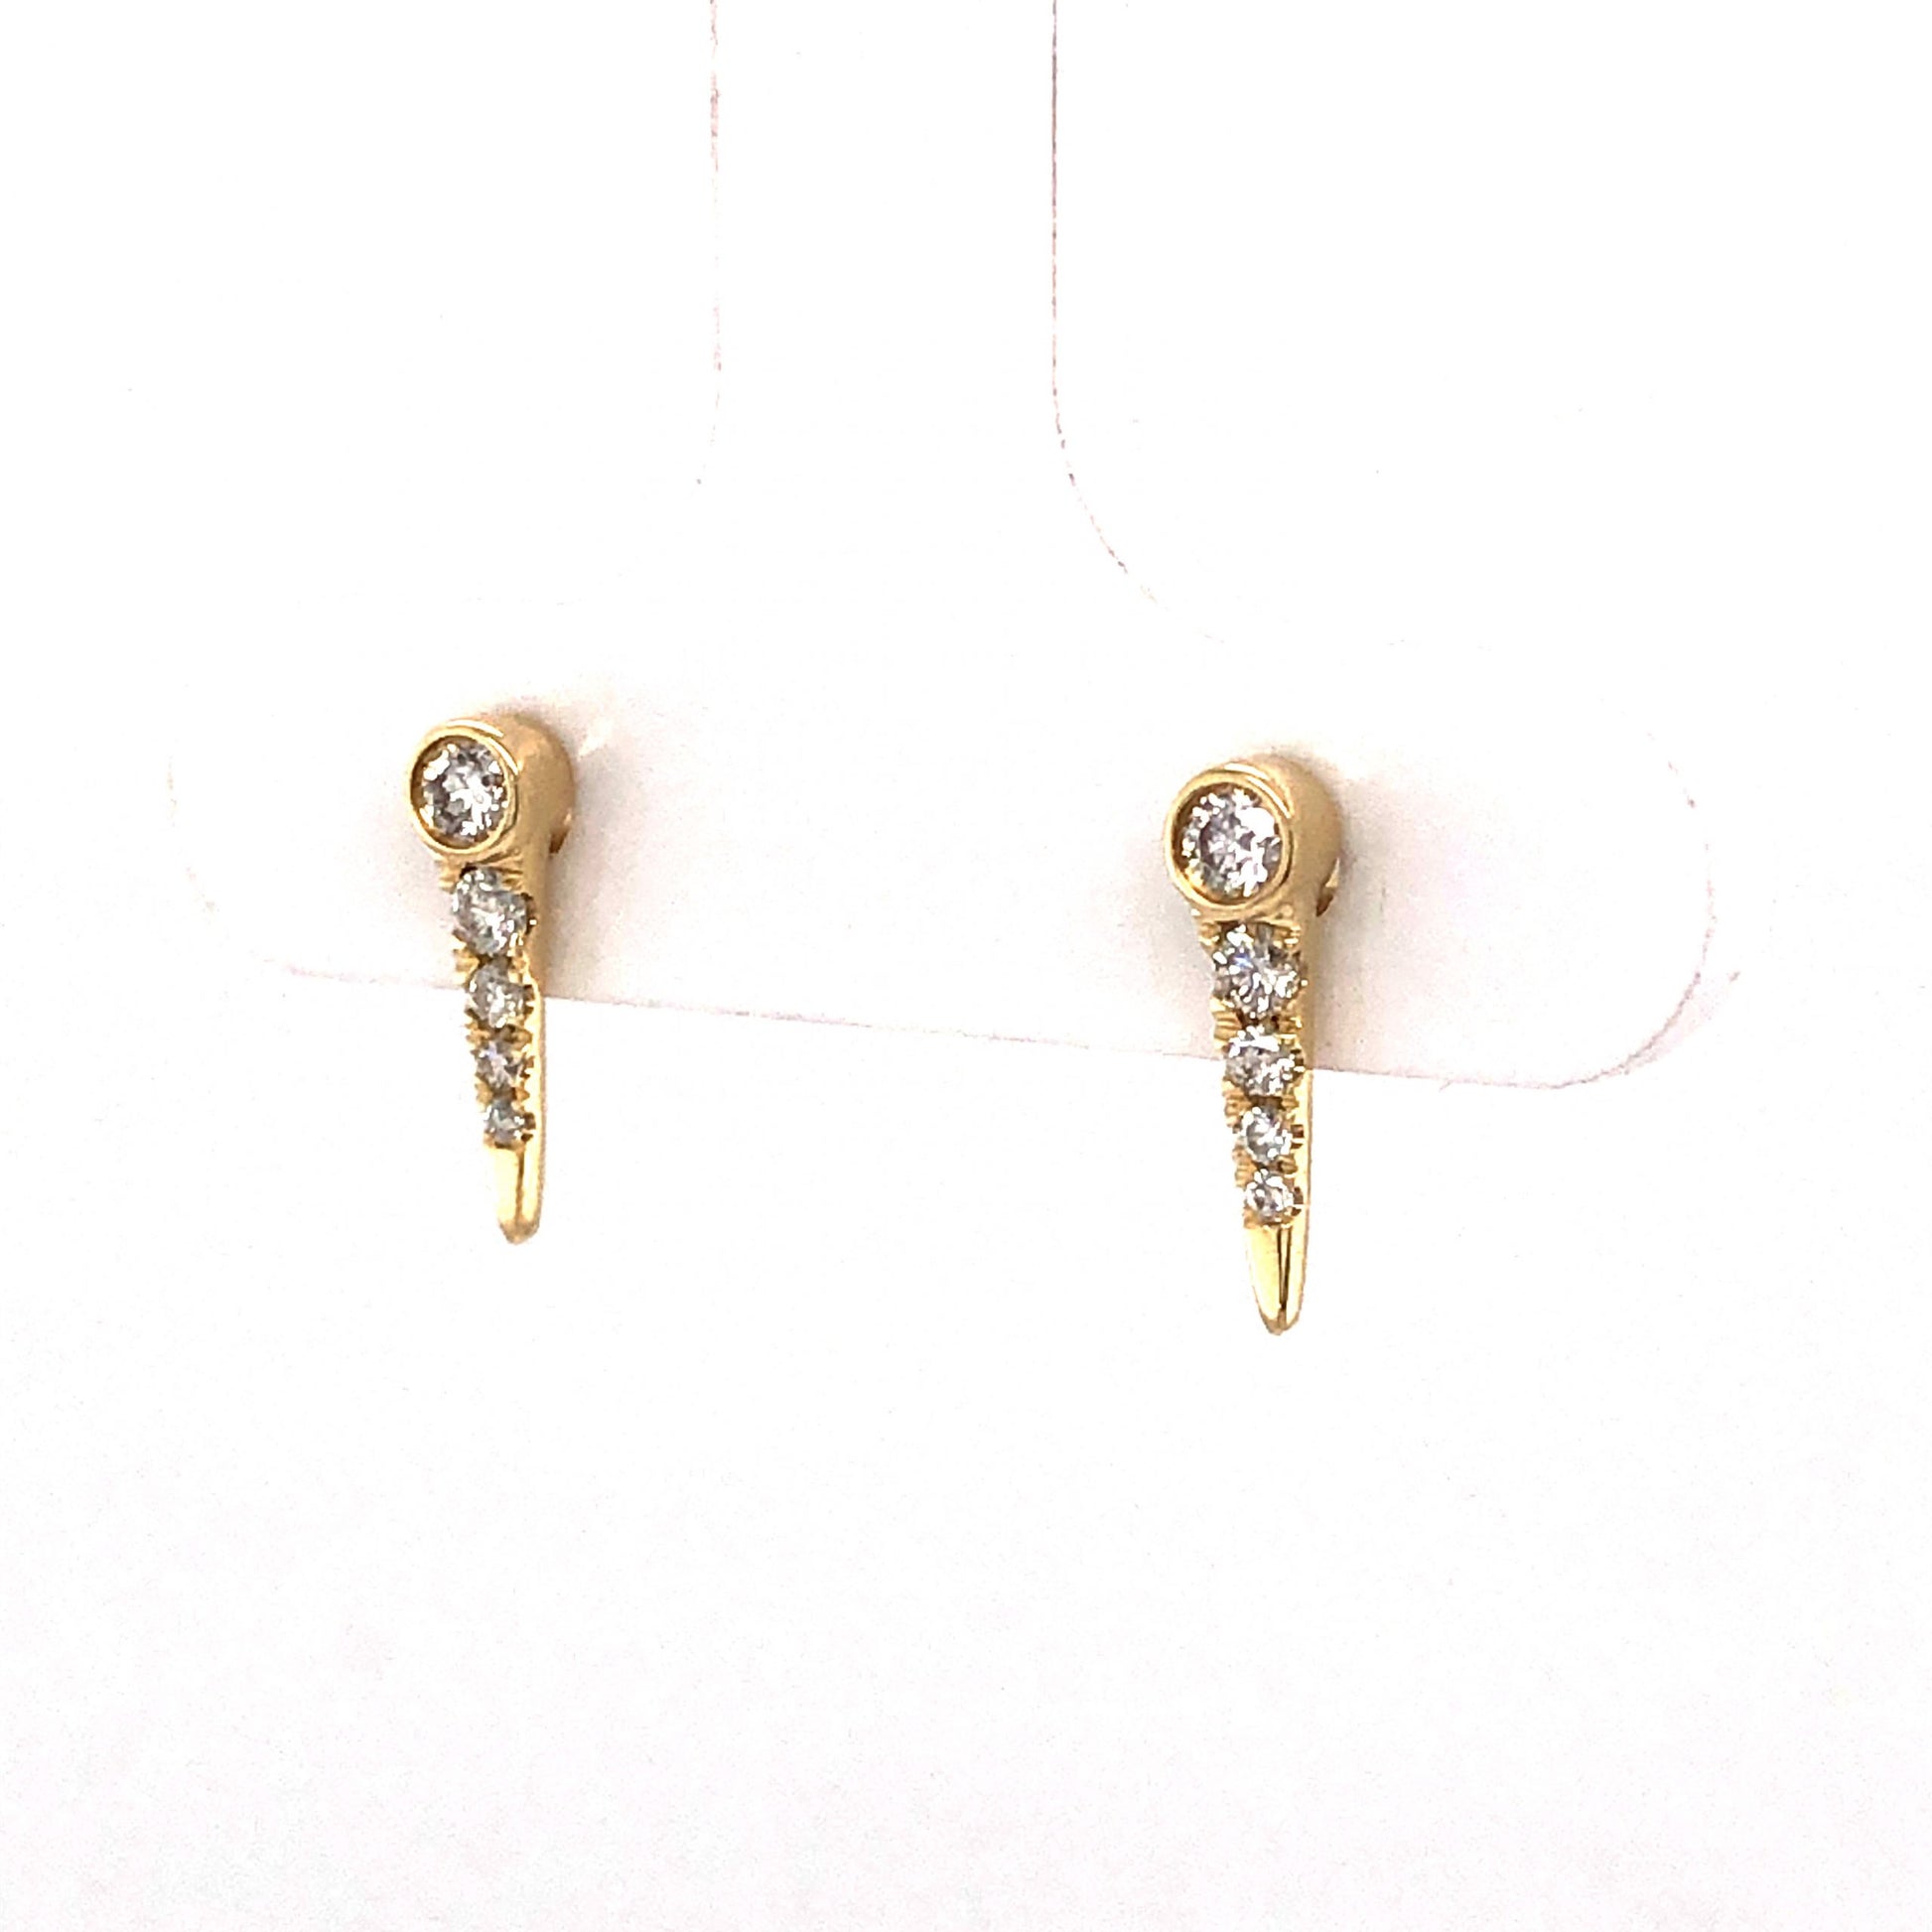 .15 Diamond Spike Stud Earrings in 14k Yellow Gold